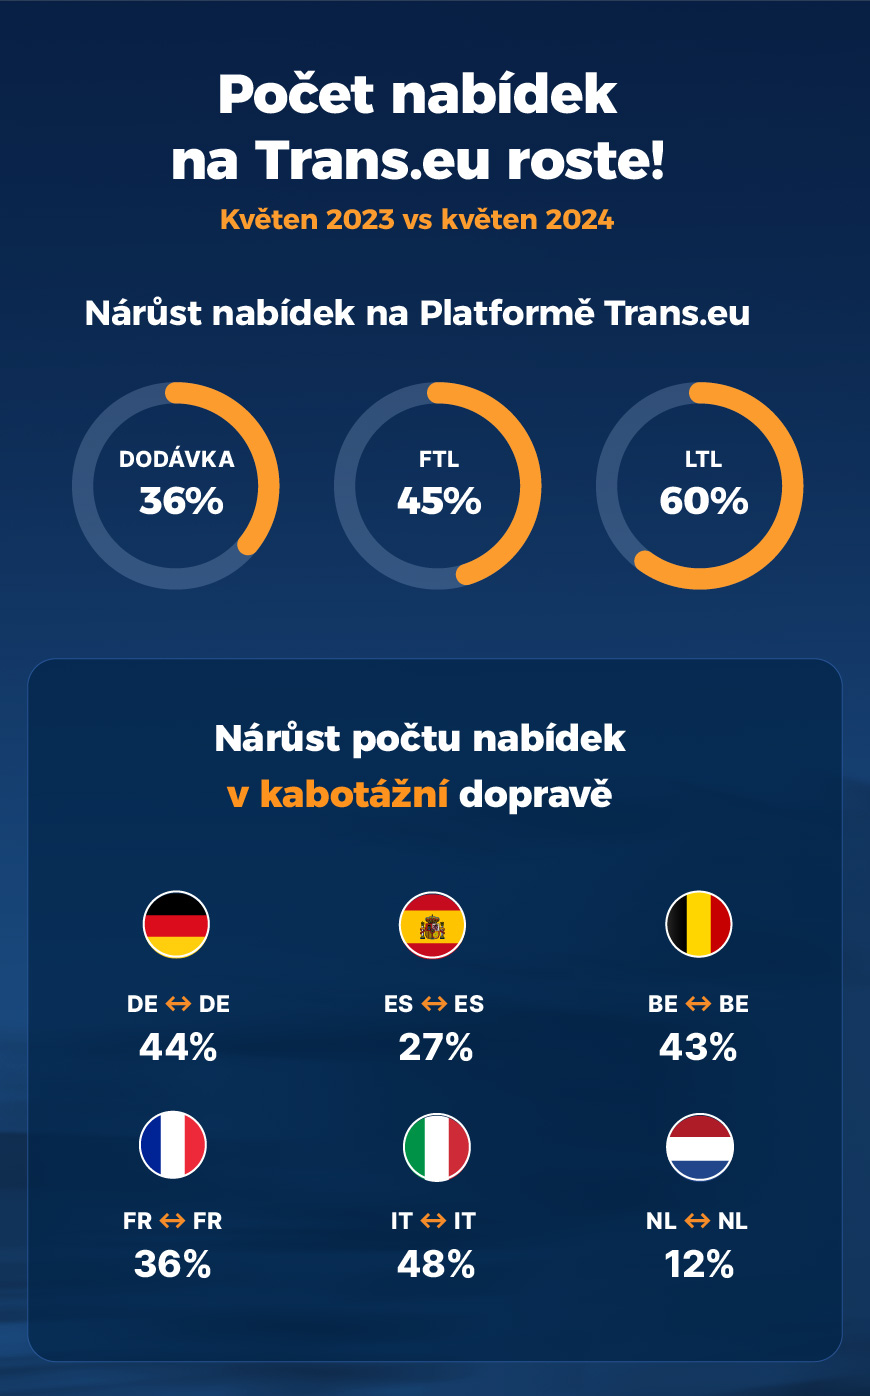 Počet nabídek na Trans.eu roste!
Nárůst nabídek na Platformě Trans.eu
Nárůst počtu nabídek v kabotážní dopravě
